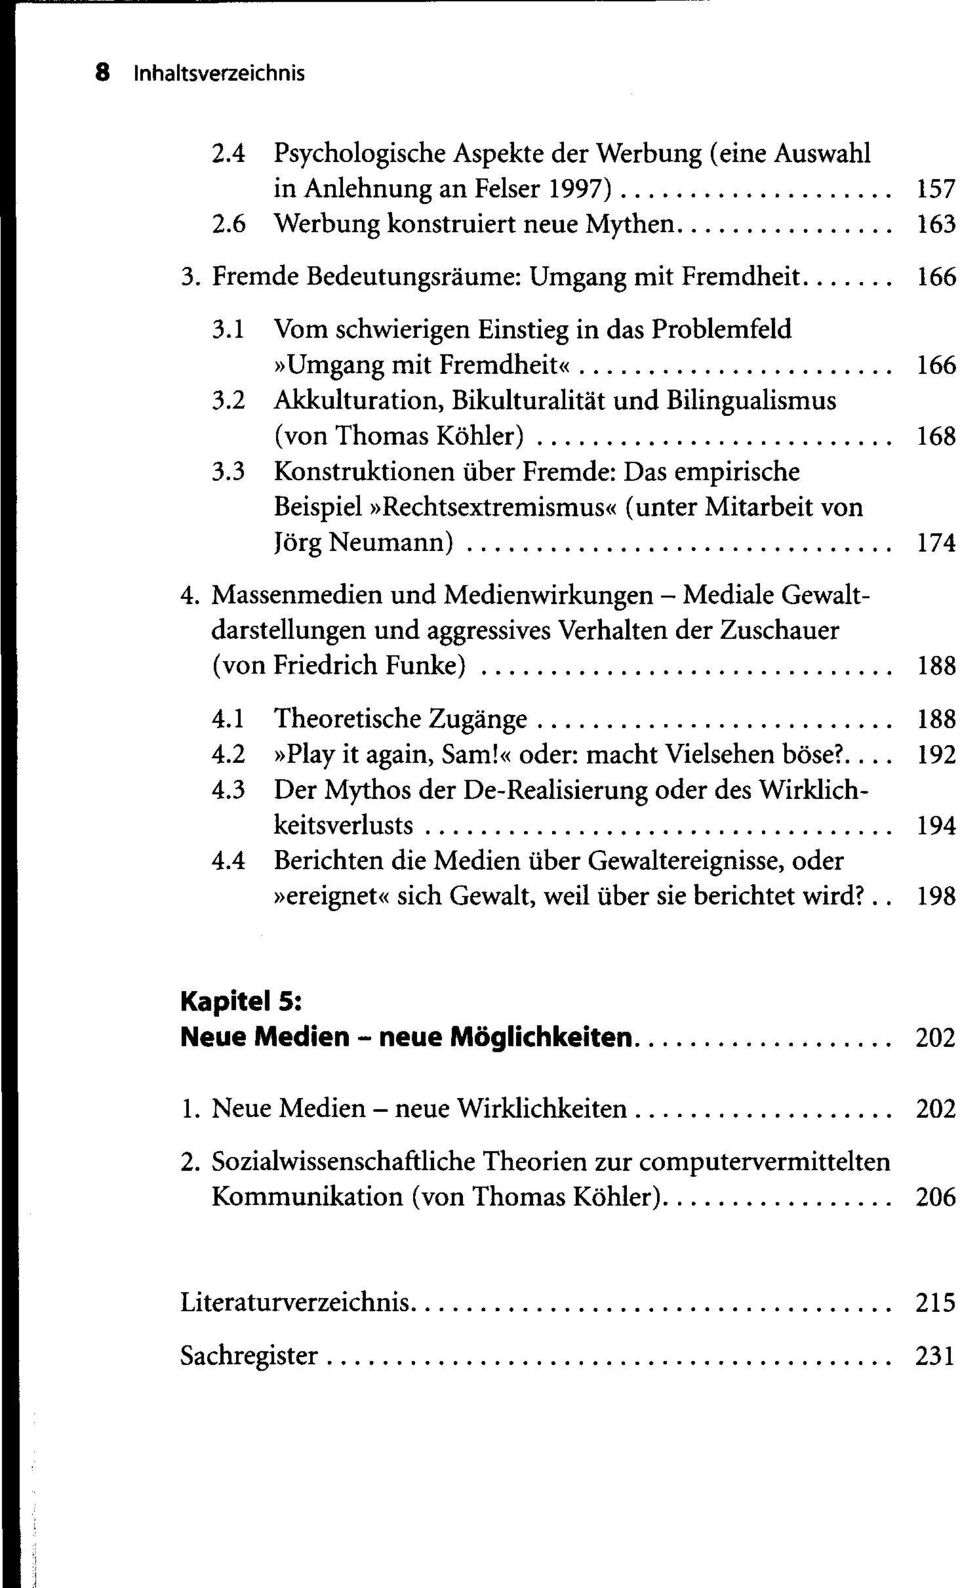 2 Akkulturation, Bikulturalität und Bilingualismus (von Thomas Köhler) 168 3.3 Konstruktionen über Fremde: Das empirische Beispiel»Rechtsextremismus«(unter Mitarbeit von Jörg Neumann) 174 4.